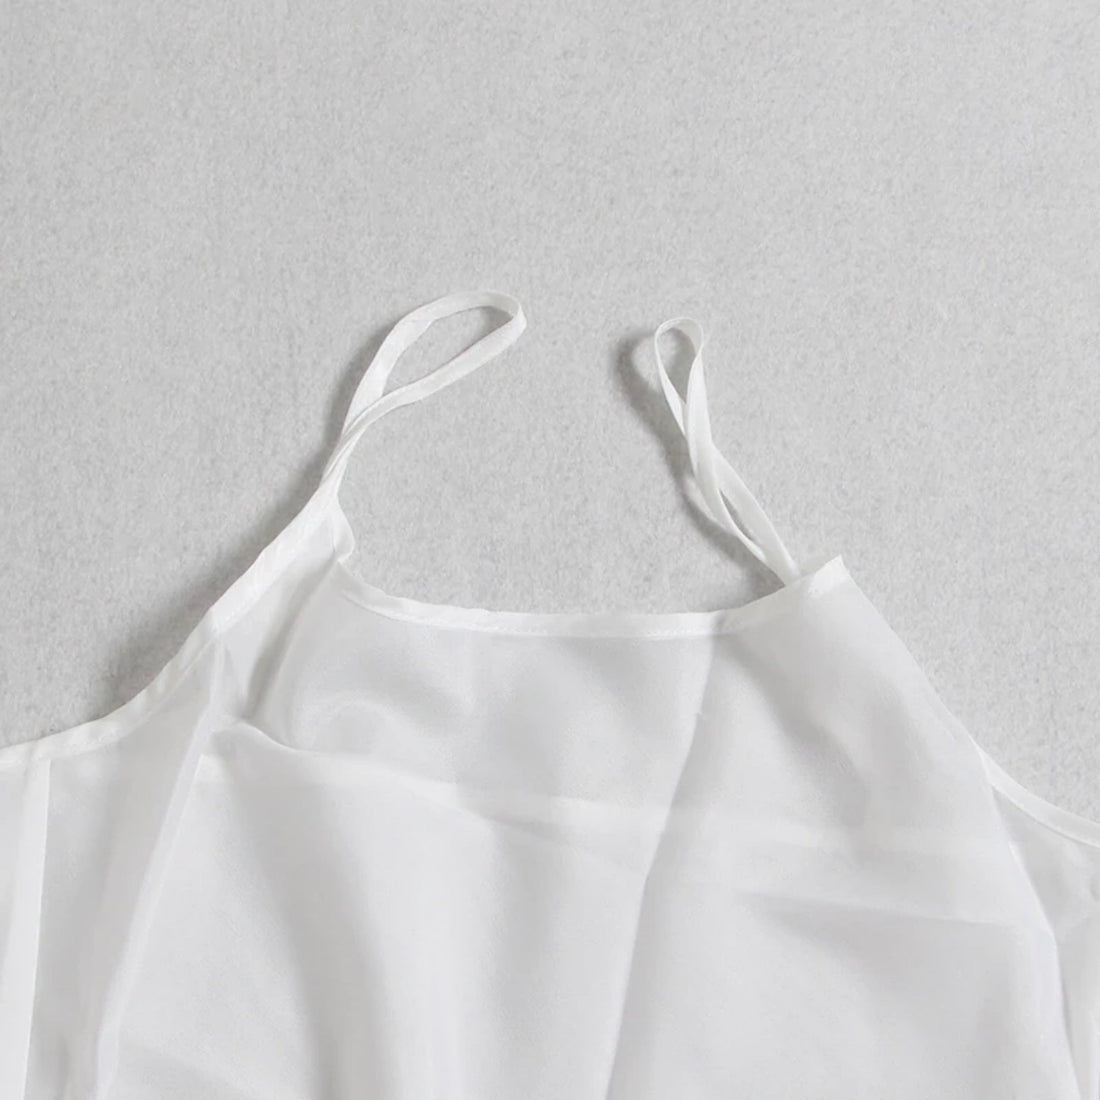 Women's Summer Polyester Long-Sleeved Shirt